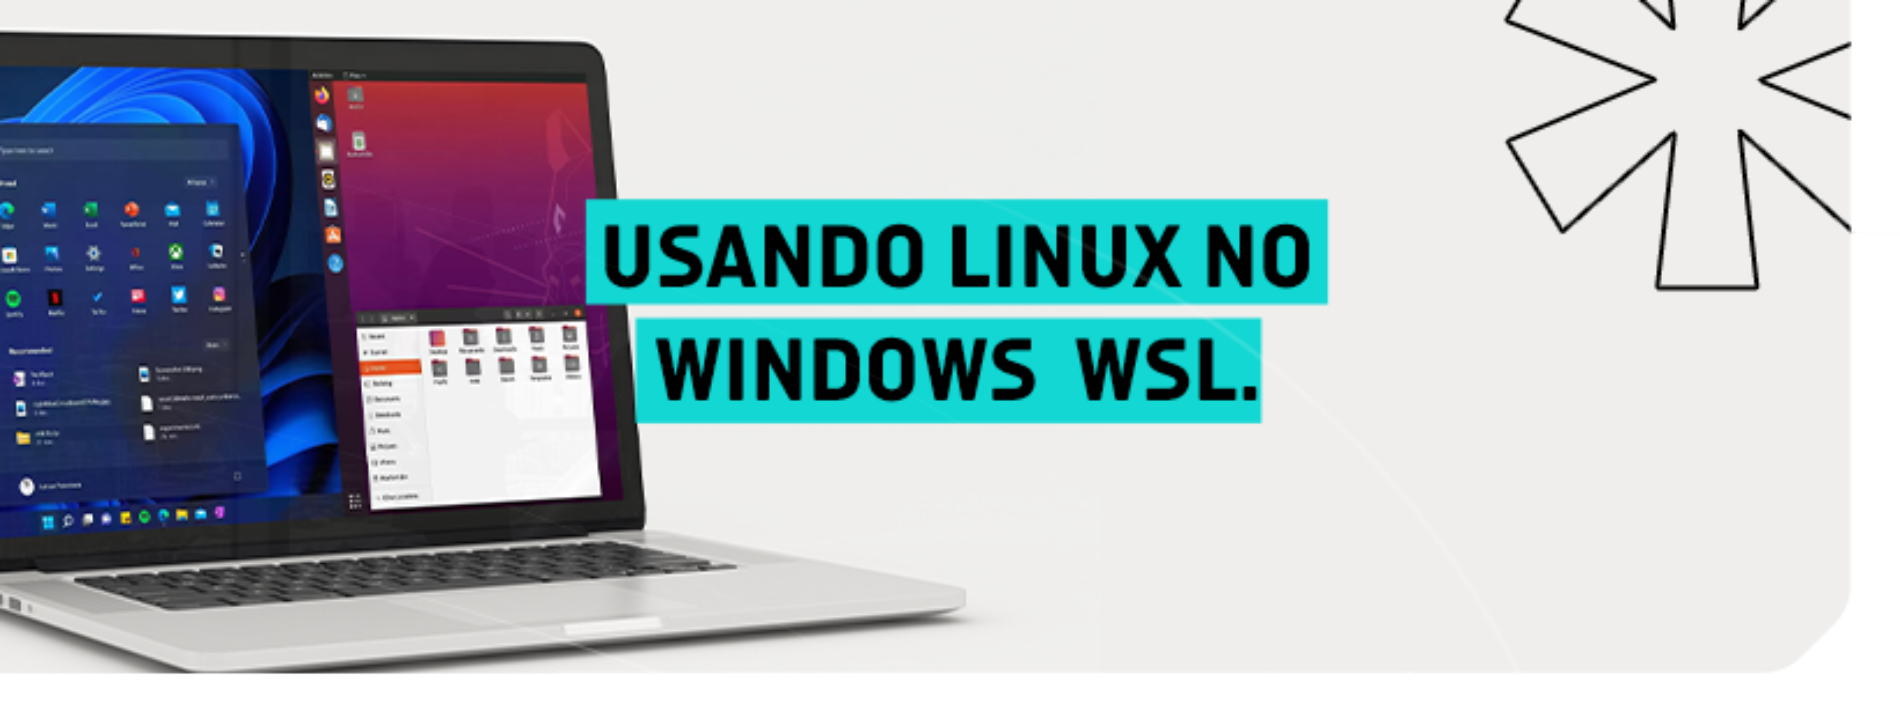 Usando Linux no Windows  WSL